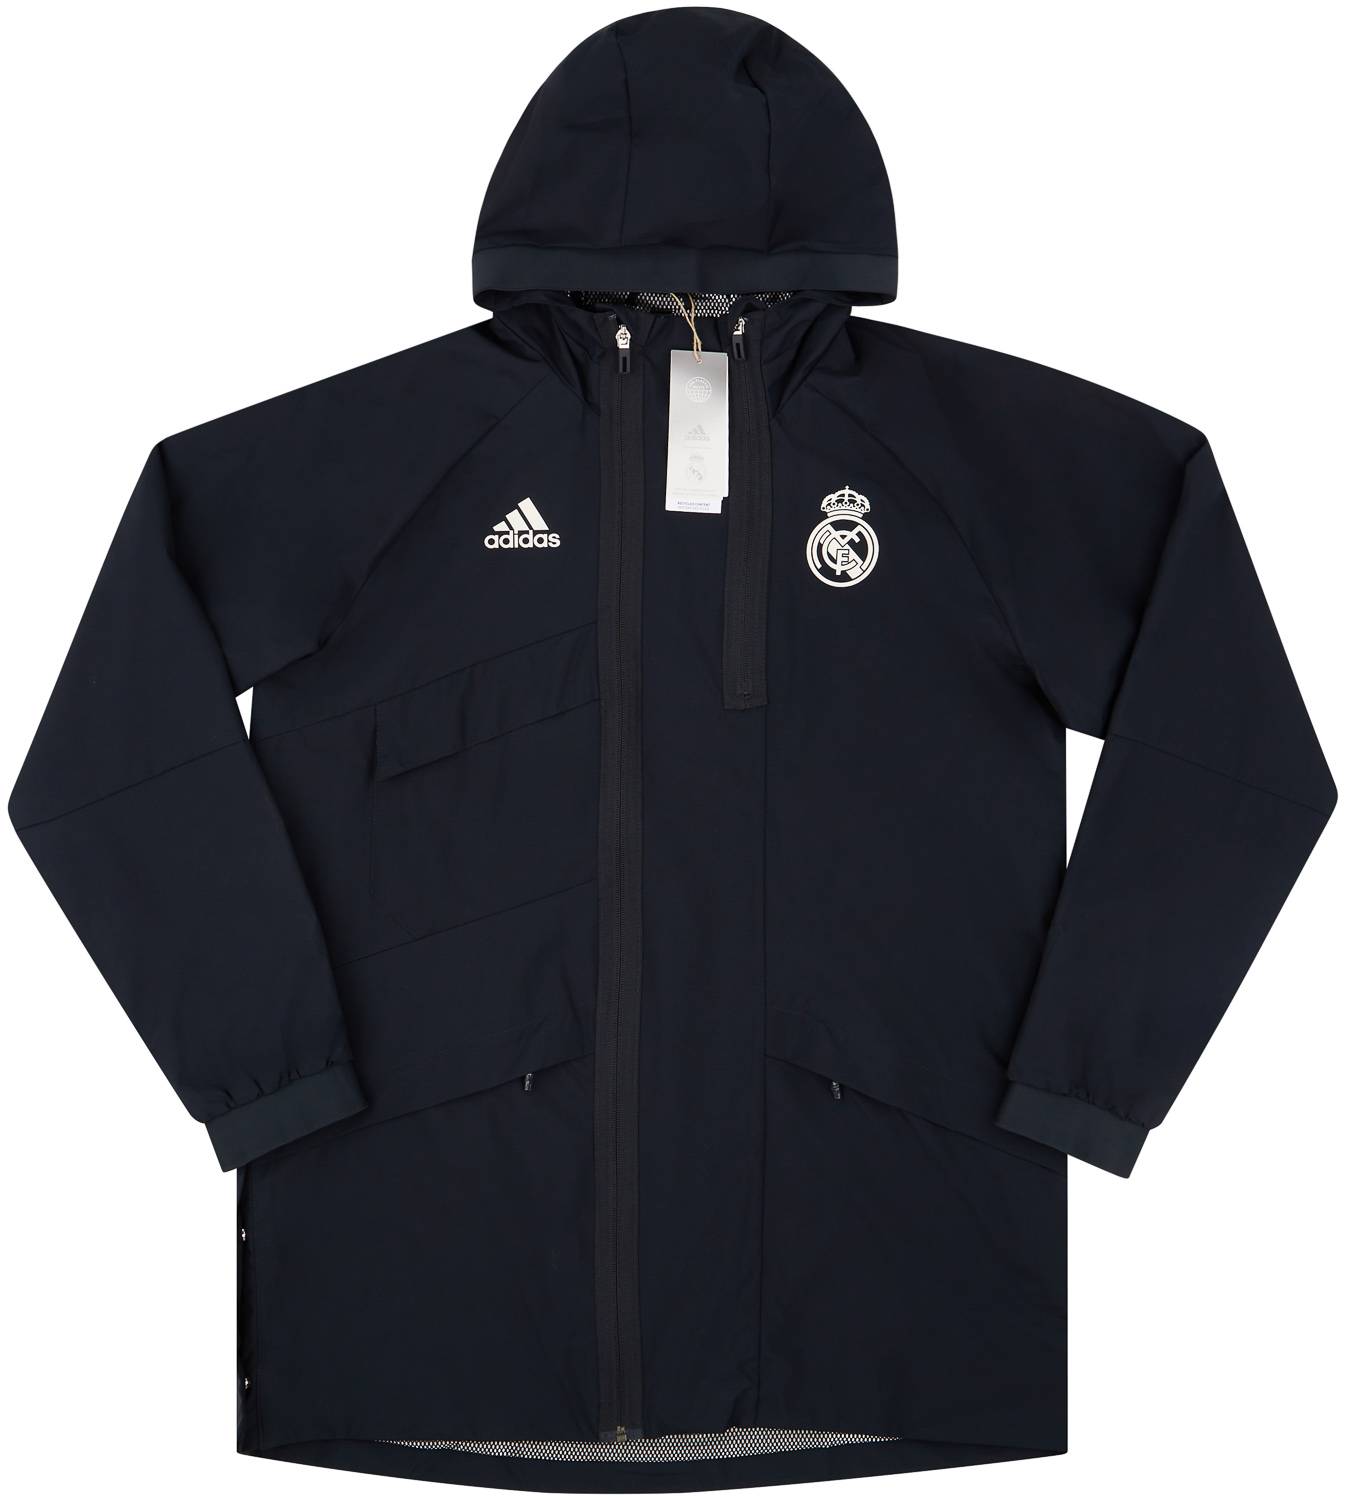 2021-22 Real Madrid adidas Travel Jacket